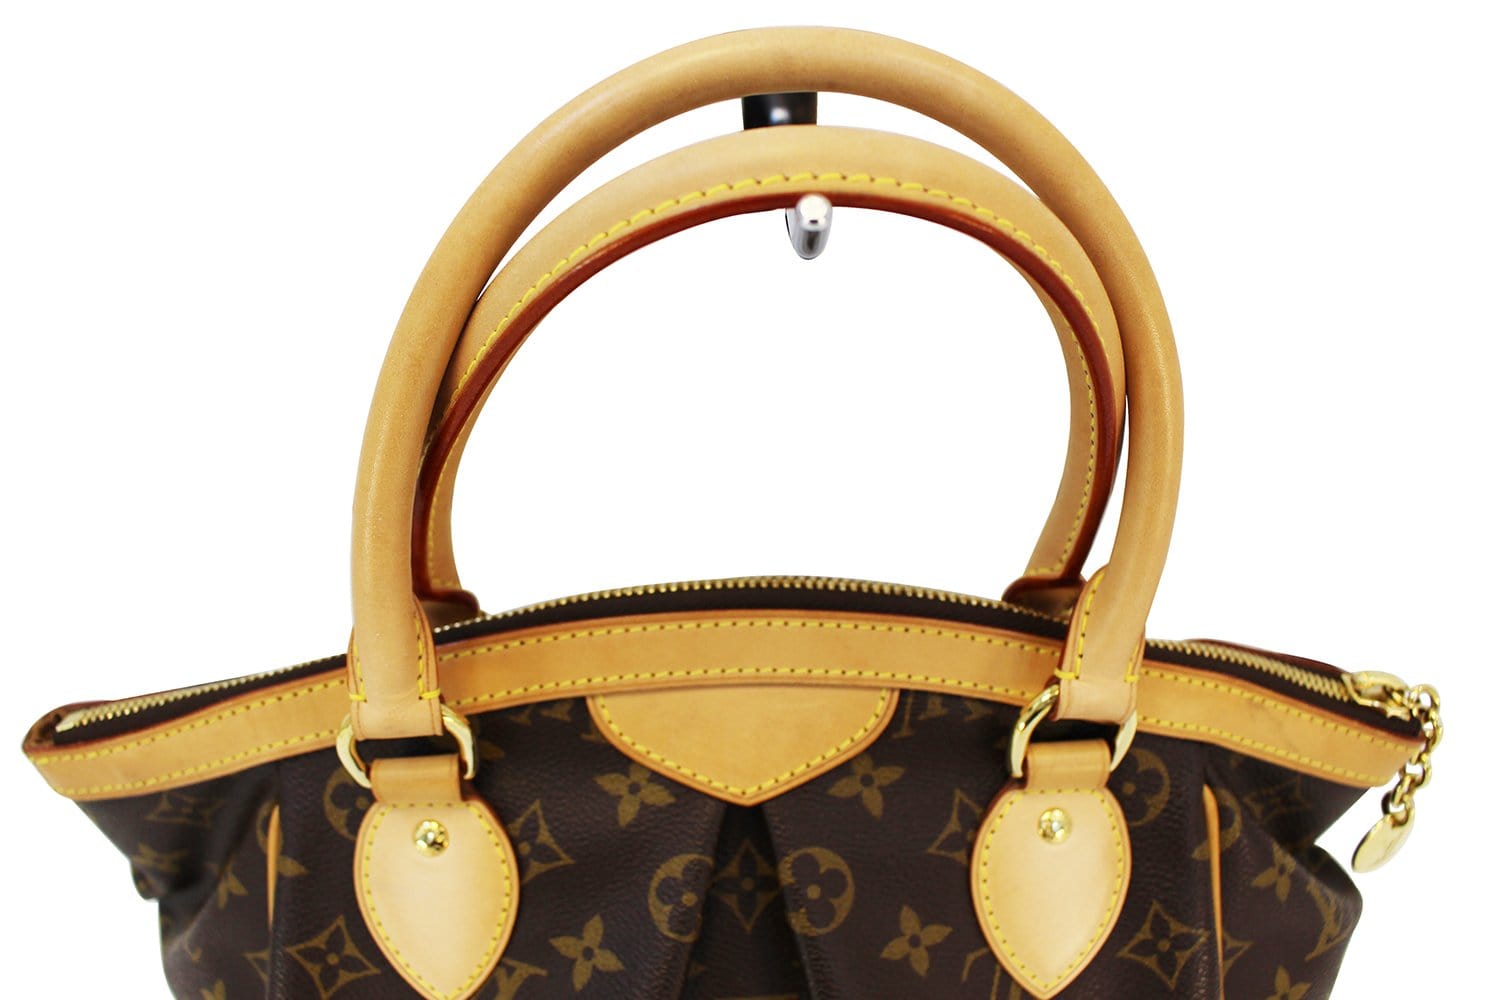 Louis Vuitton Tivoli PM Bag Review 